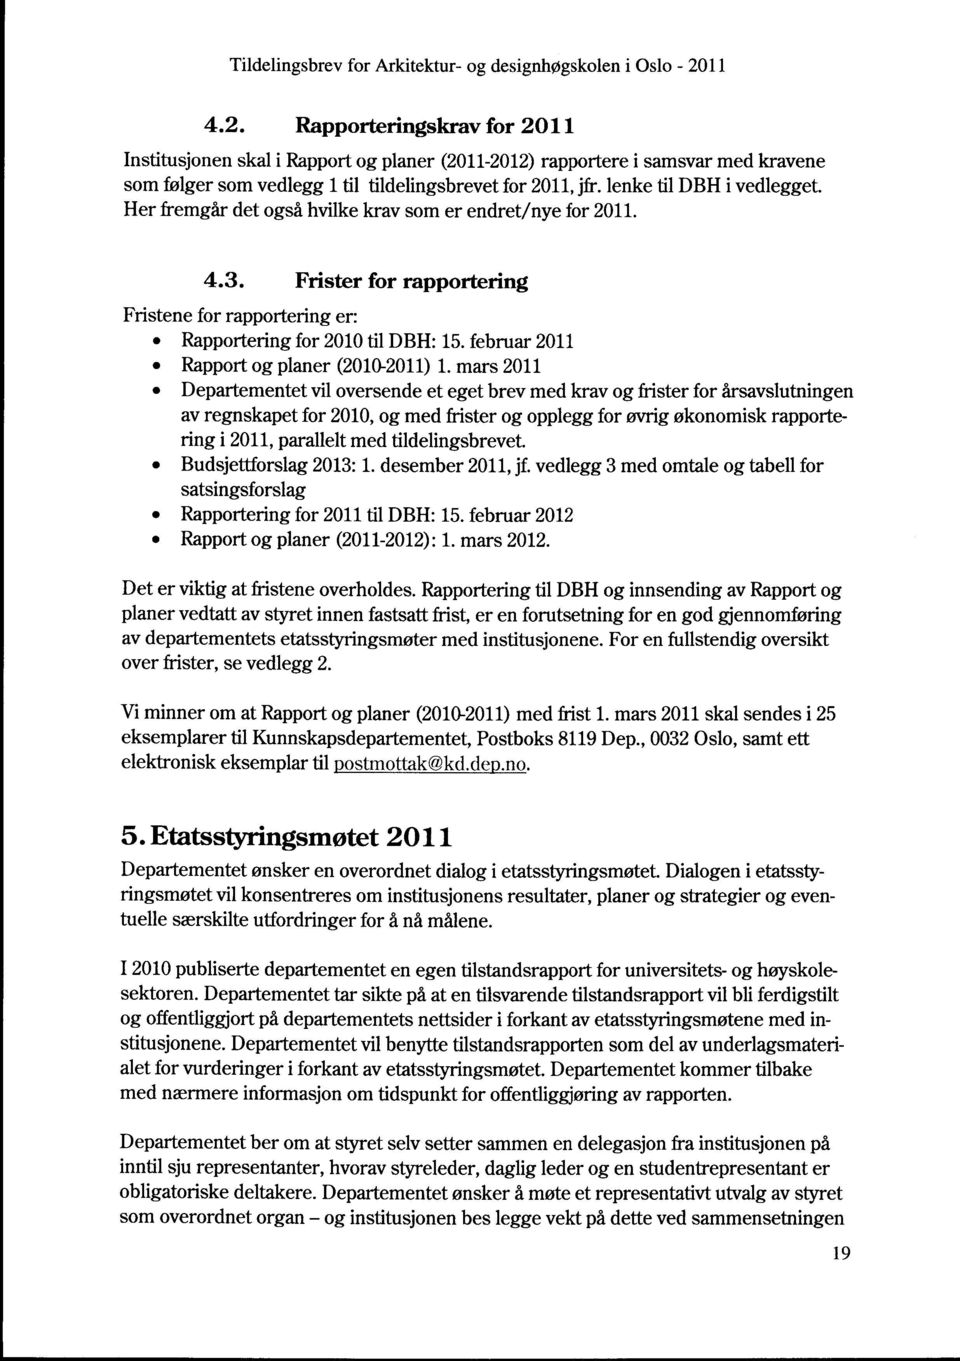 februar 2011 Rapport og planer (2010-2011) 1.